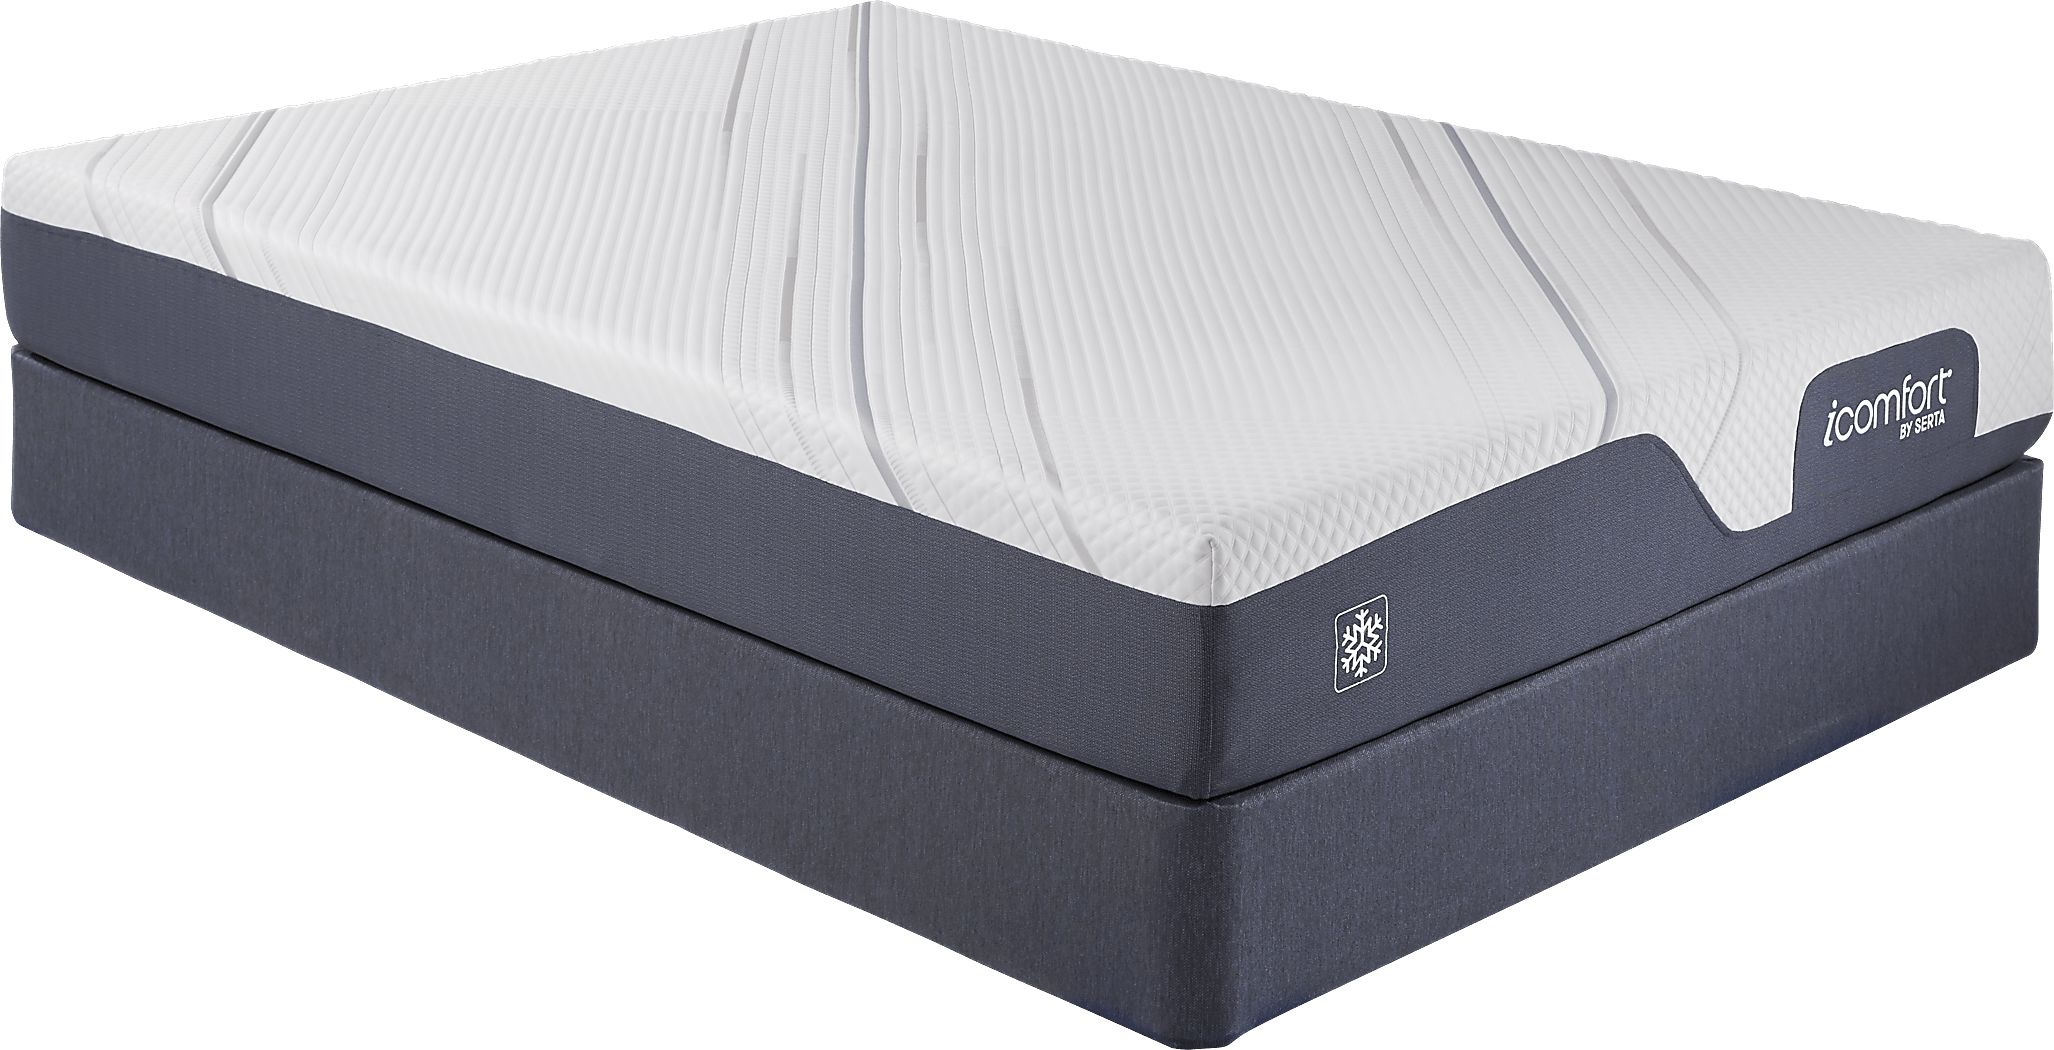 icomfort queen mattress reviews